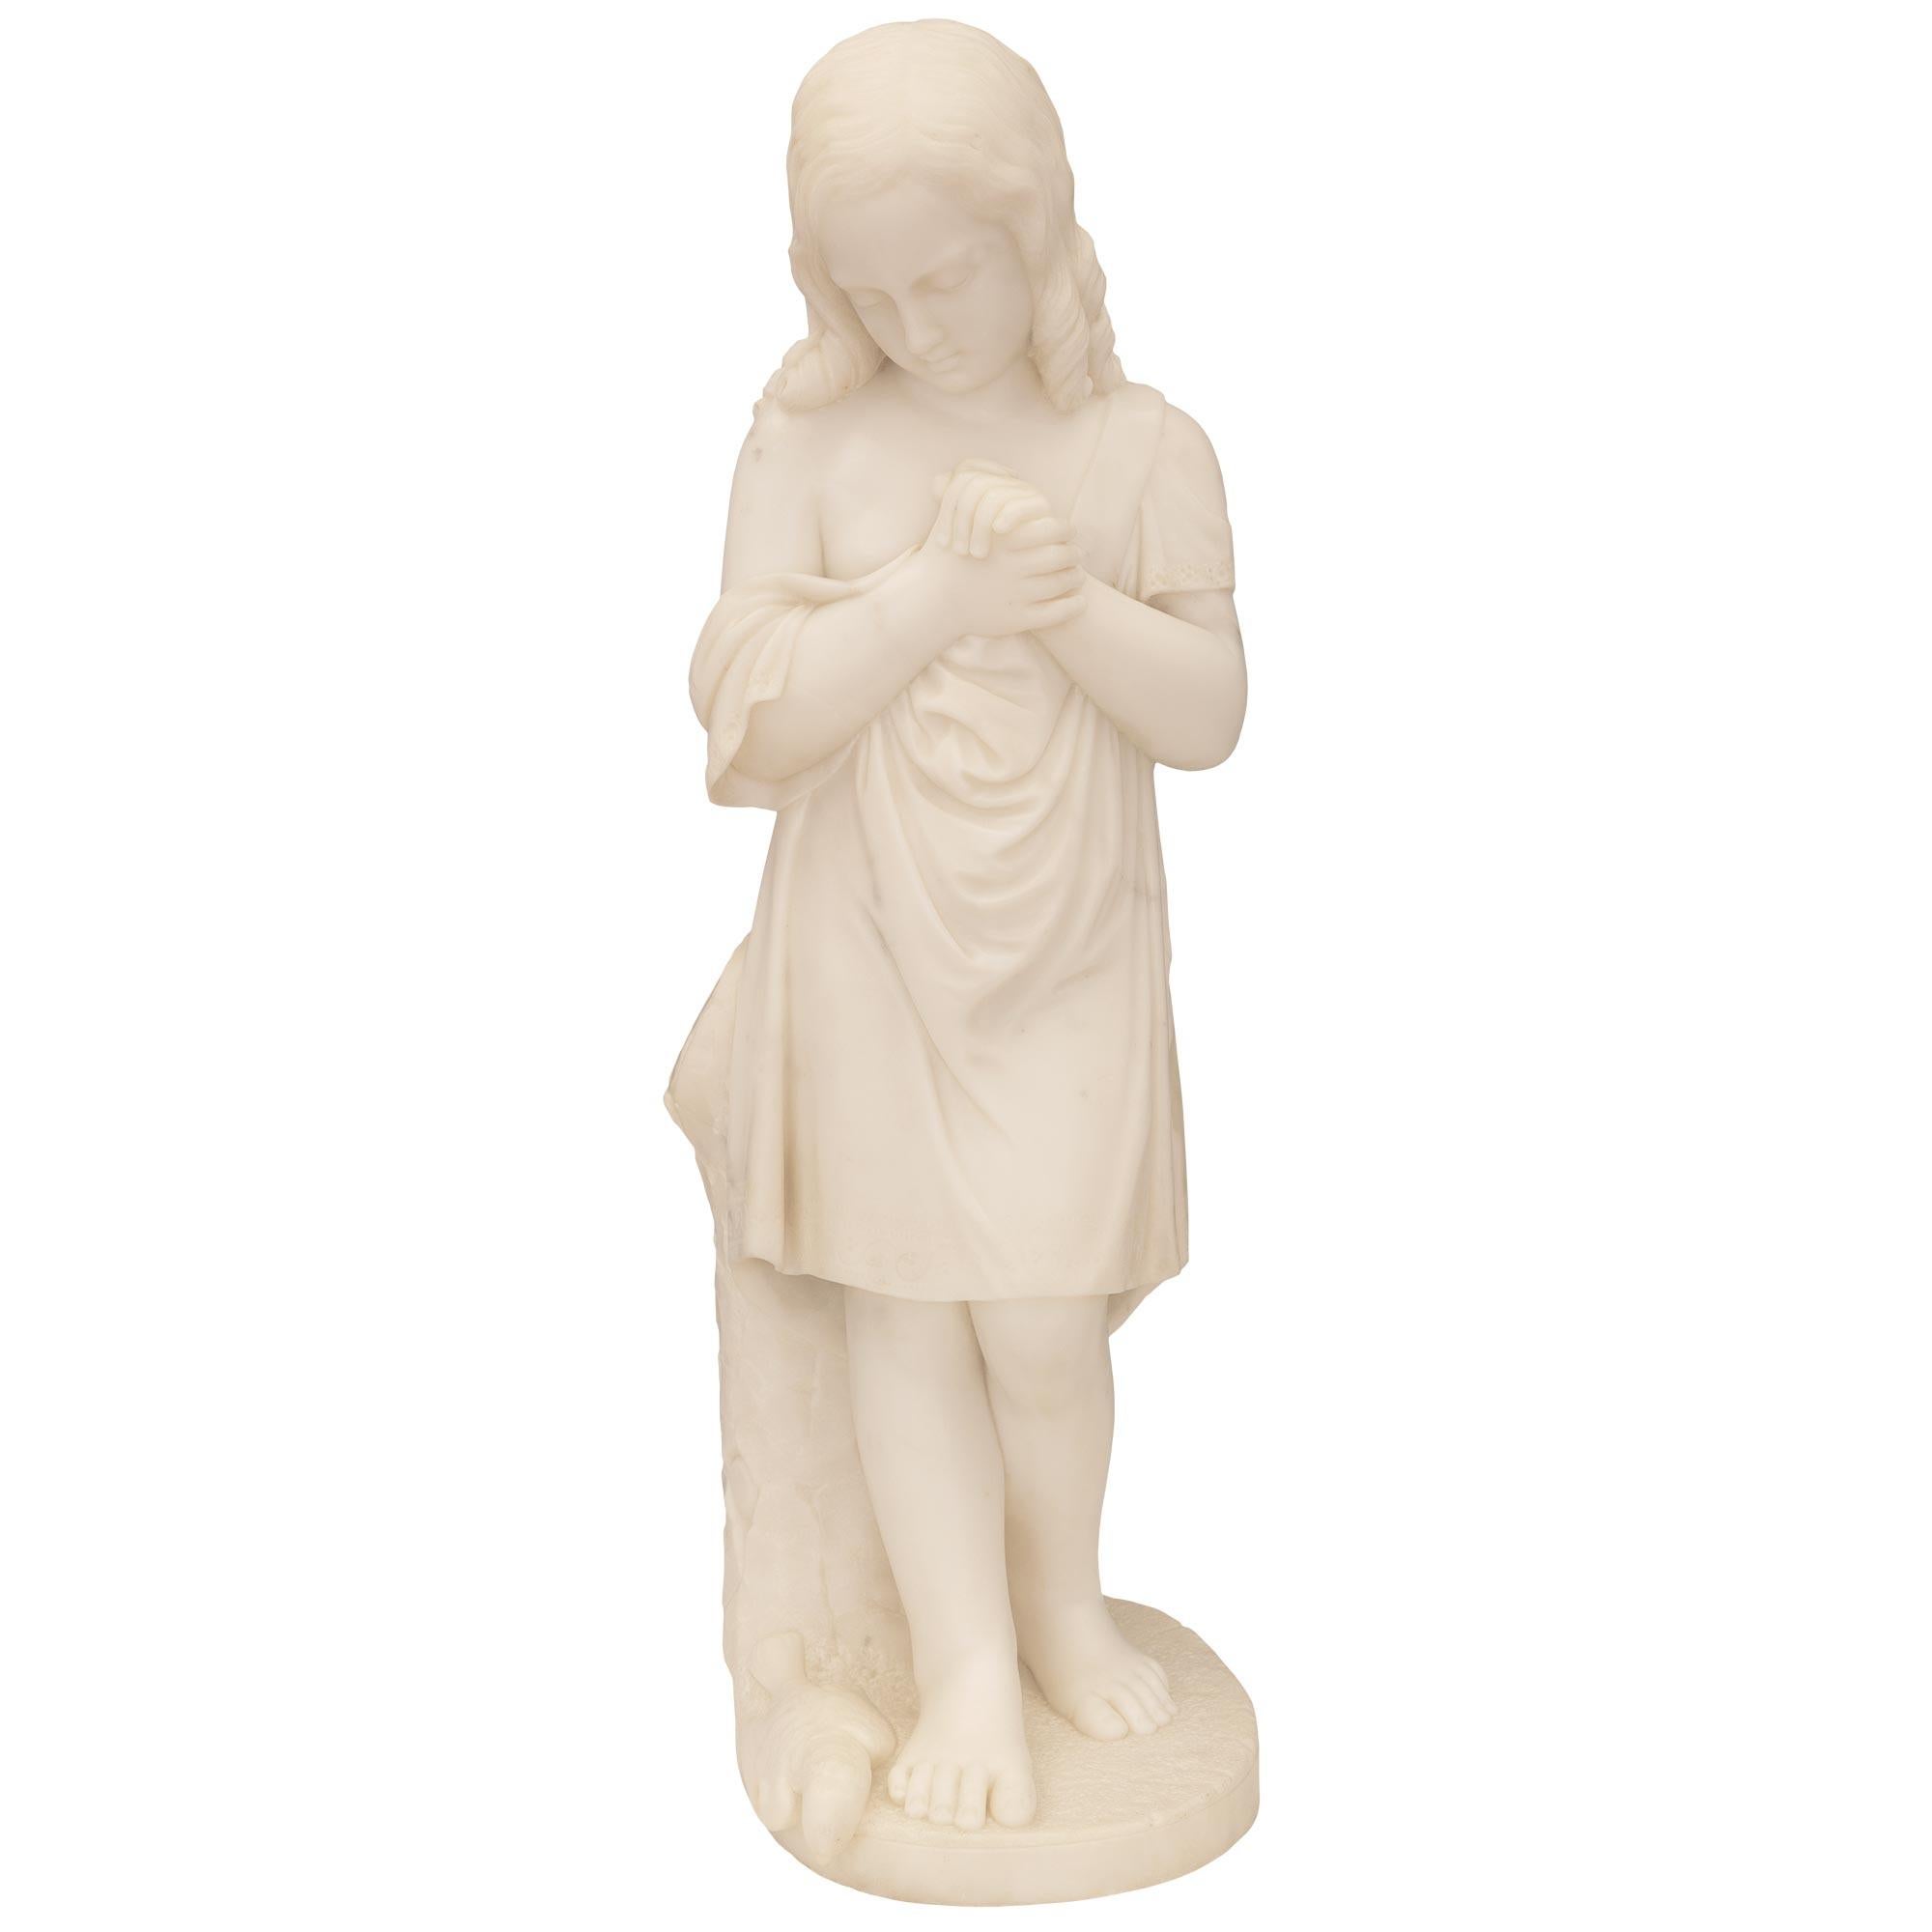 Exceptionnelle statue italienne du XIXe siècle en marbre blanc de Carrare. La statue représente une jeune fille pleurant la mort de son oiseau de compagnie. La statue est surélevée par une base oblongue avec un fin motif au sol où l'oiseau tombé